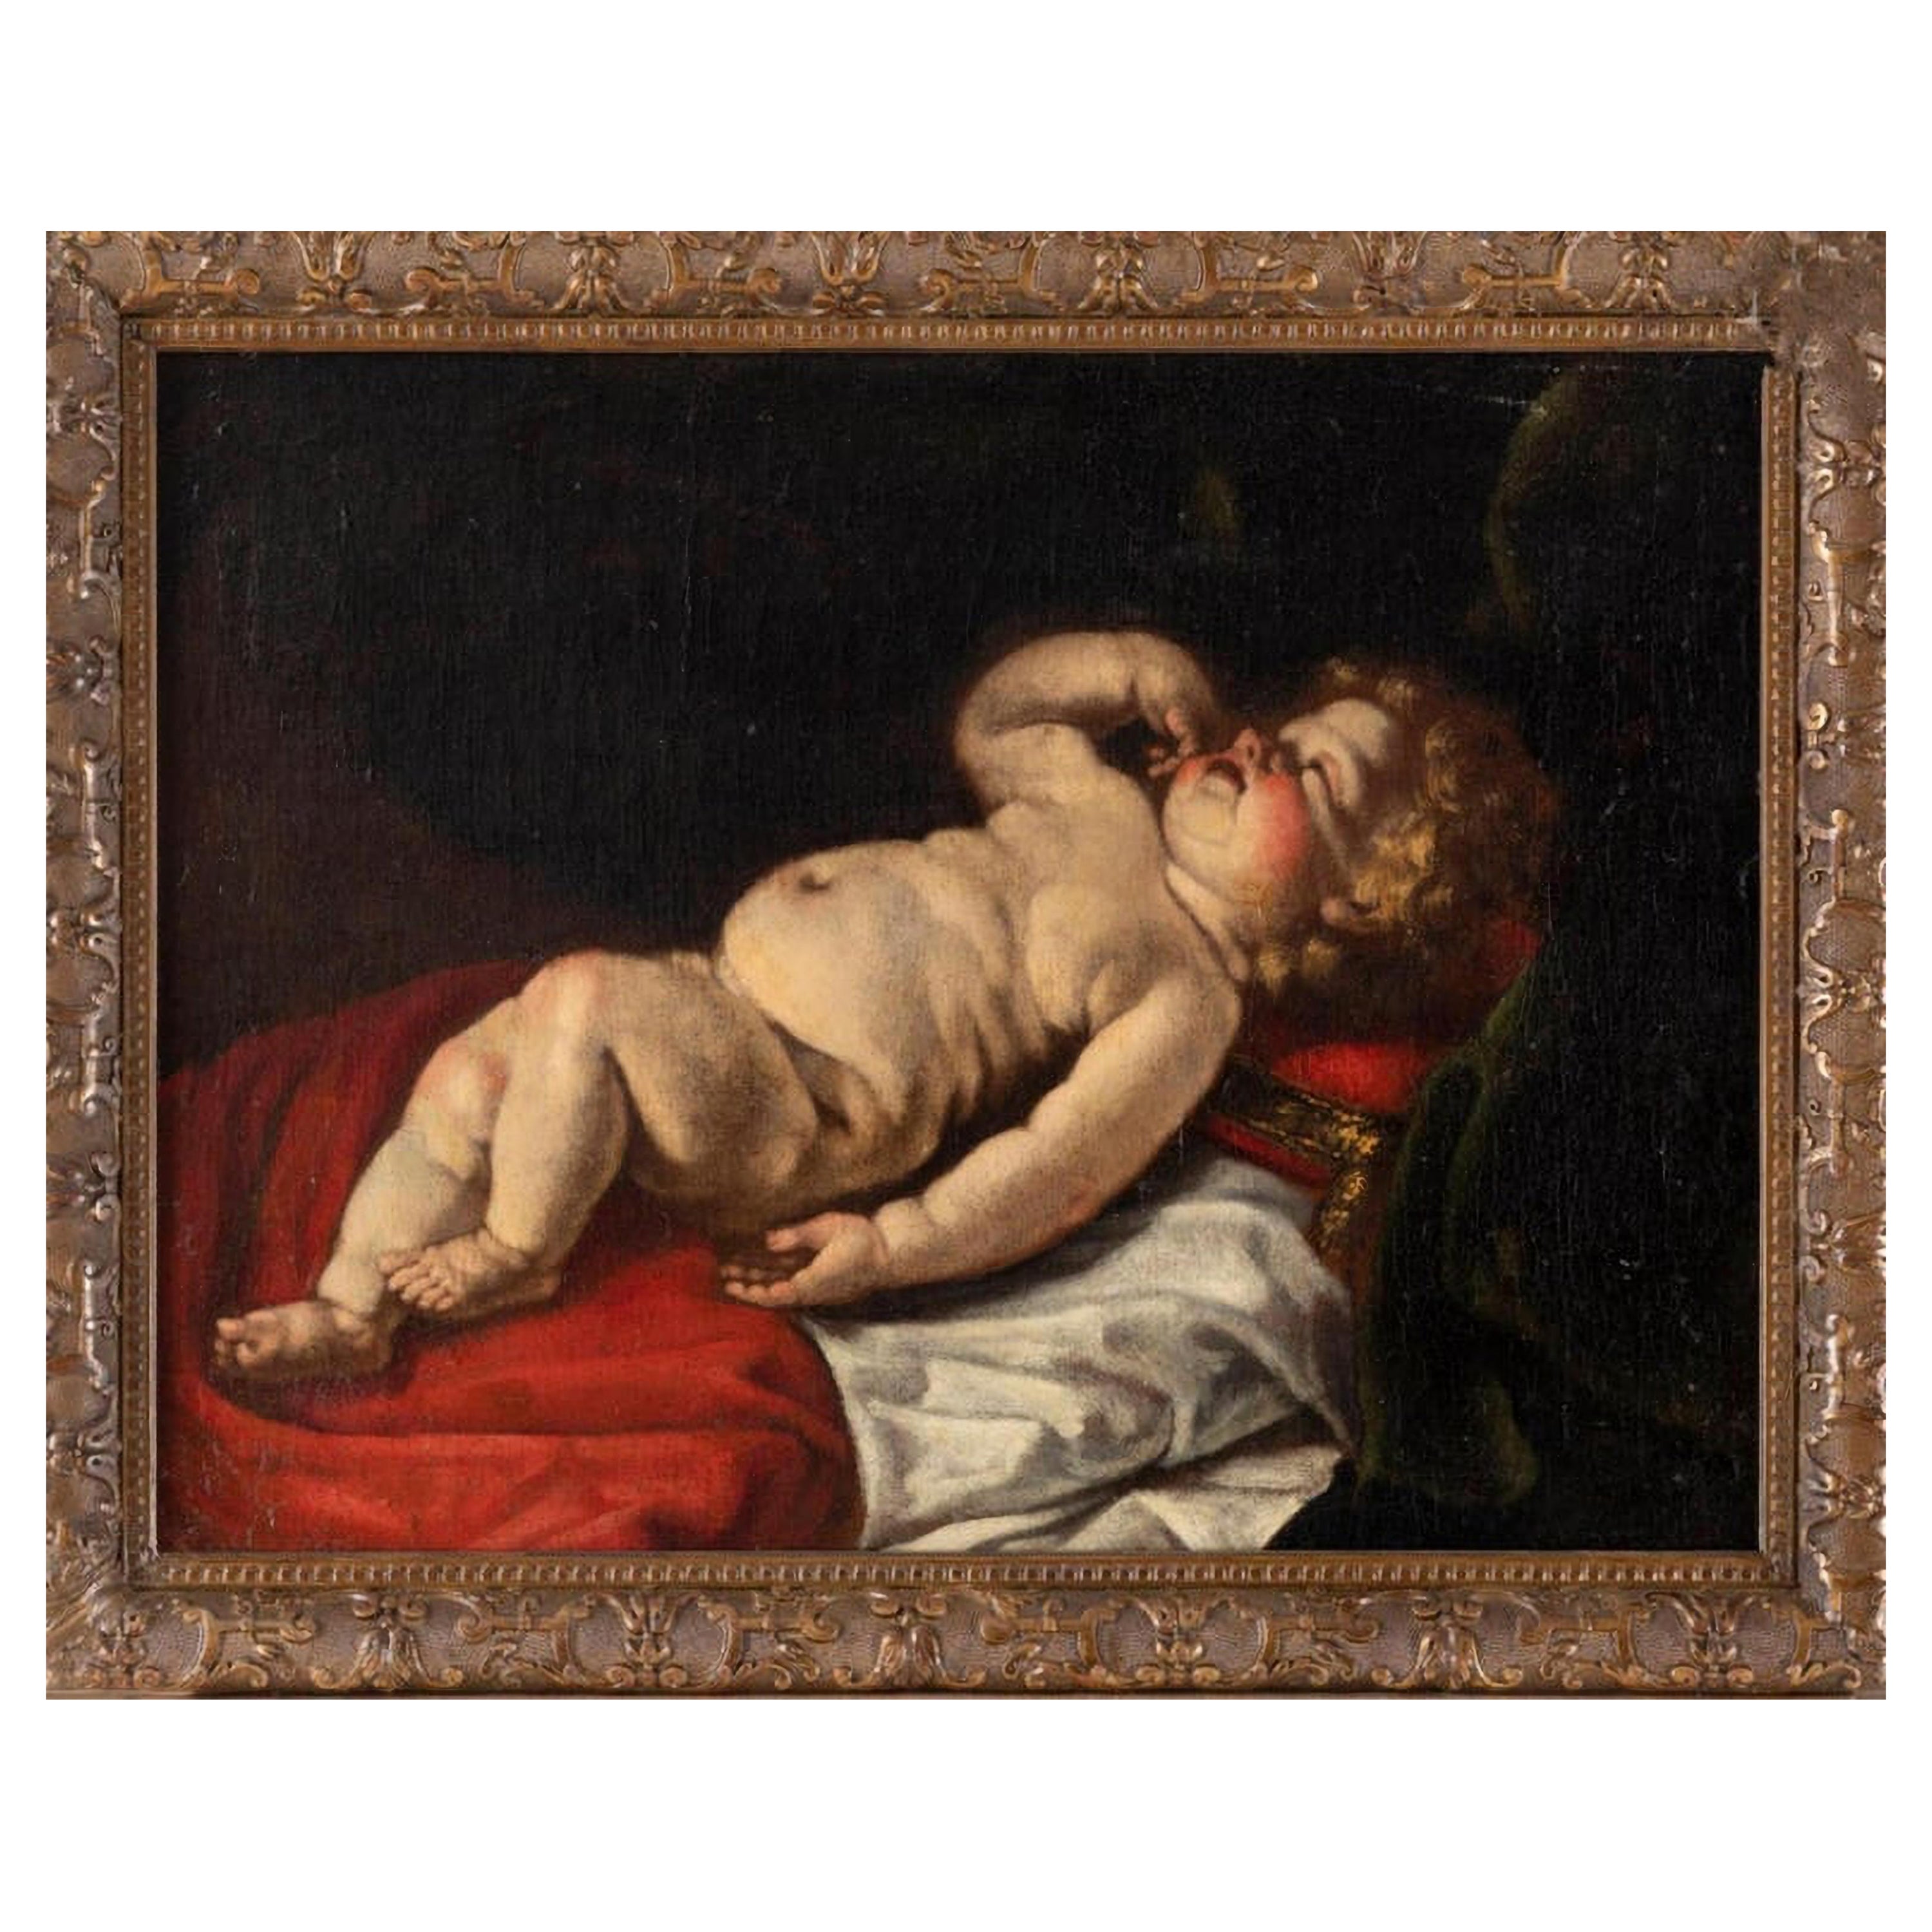 Luigi Miradori um 1600 - um 1657 "Junges schlafendes Kind" 17. Jahrhundert VIDE0